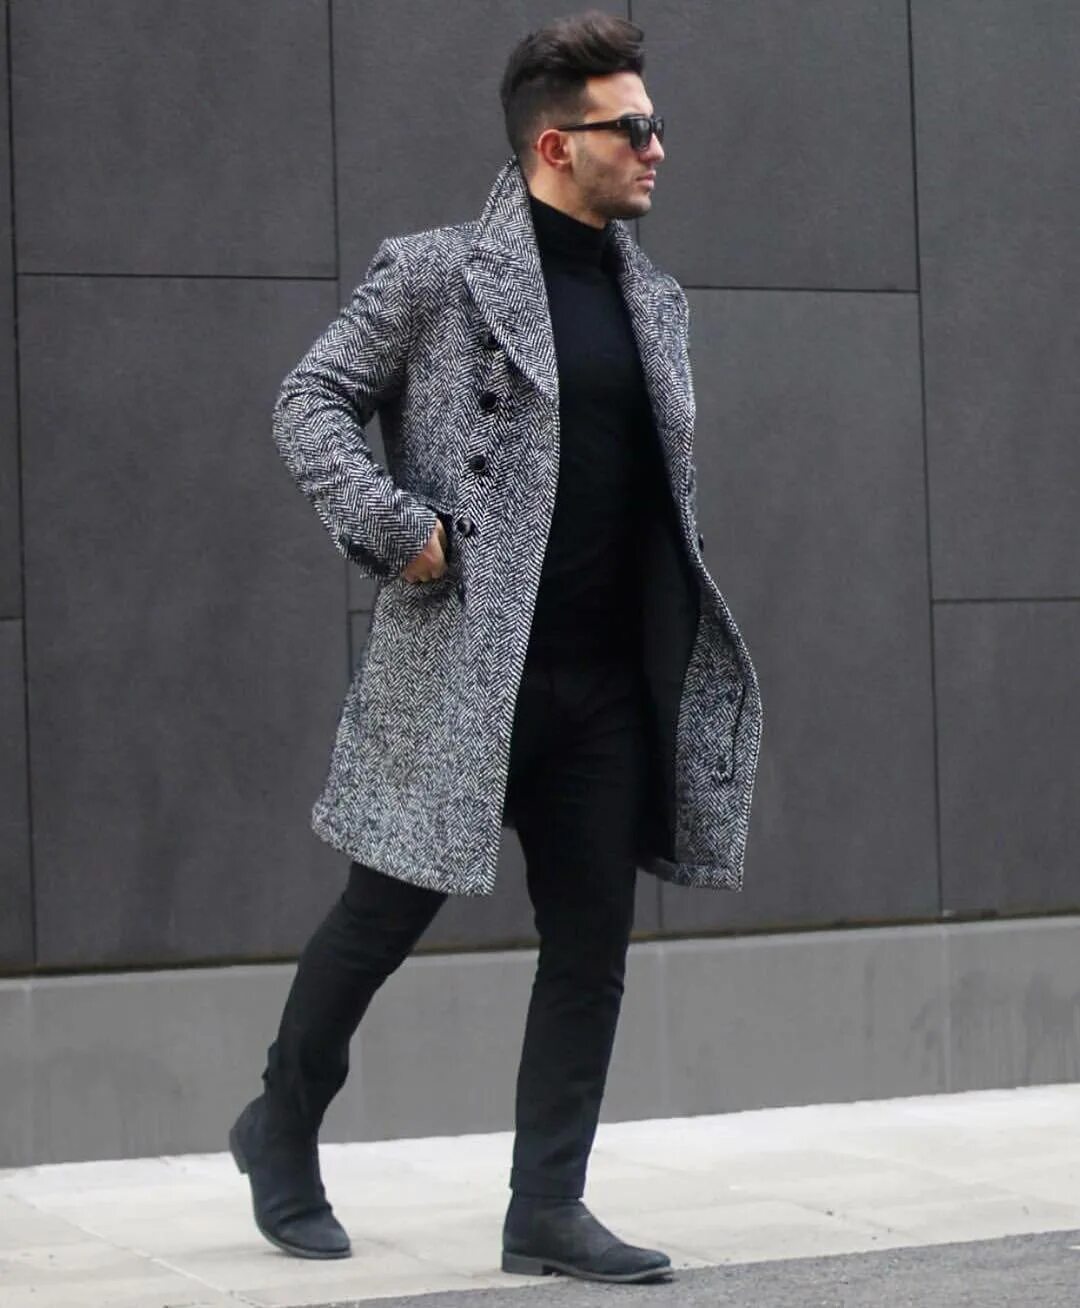 Мужское поло юс. Серое пальто мужское. Стильное мужское пальто. Одежда под пальто мужское. Мужской лук с серым пальто.